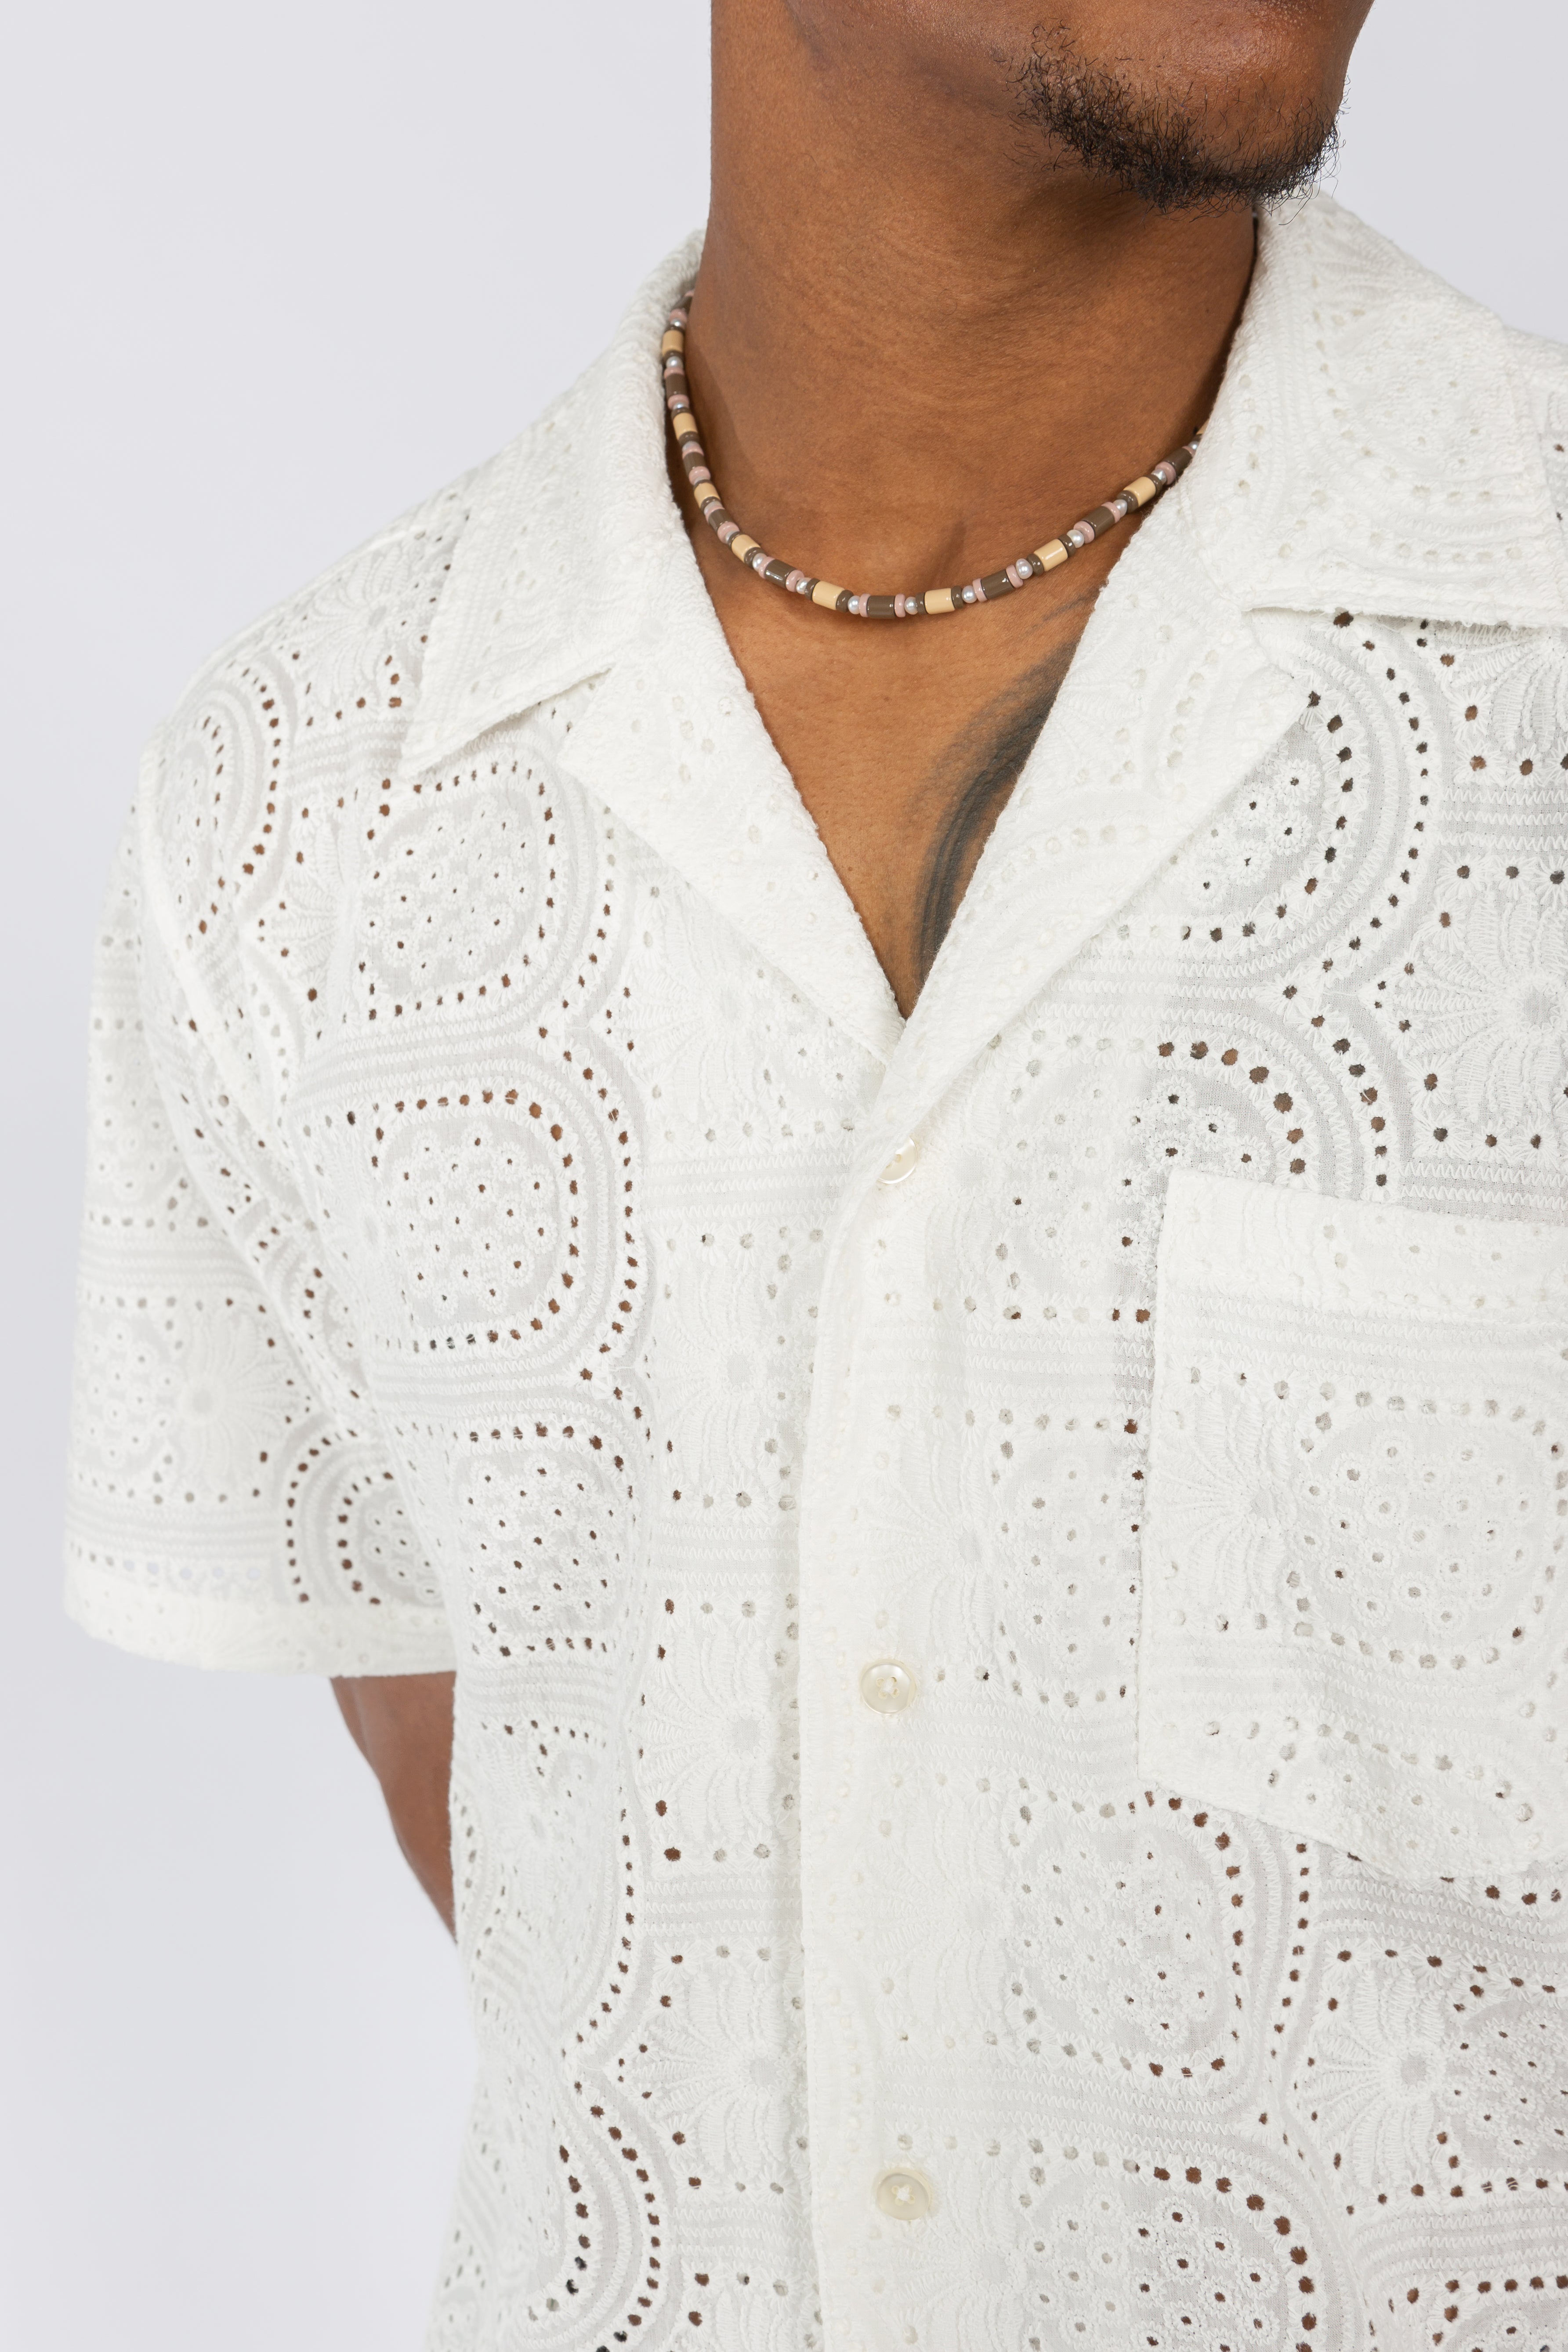 Long Sleeve Convertible Collar Shirt - Natural Prairie Eyelet – SHADES OF  GREY BY MICAH COHEN